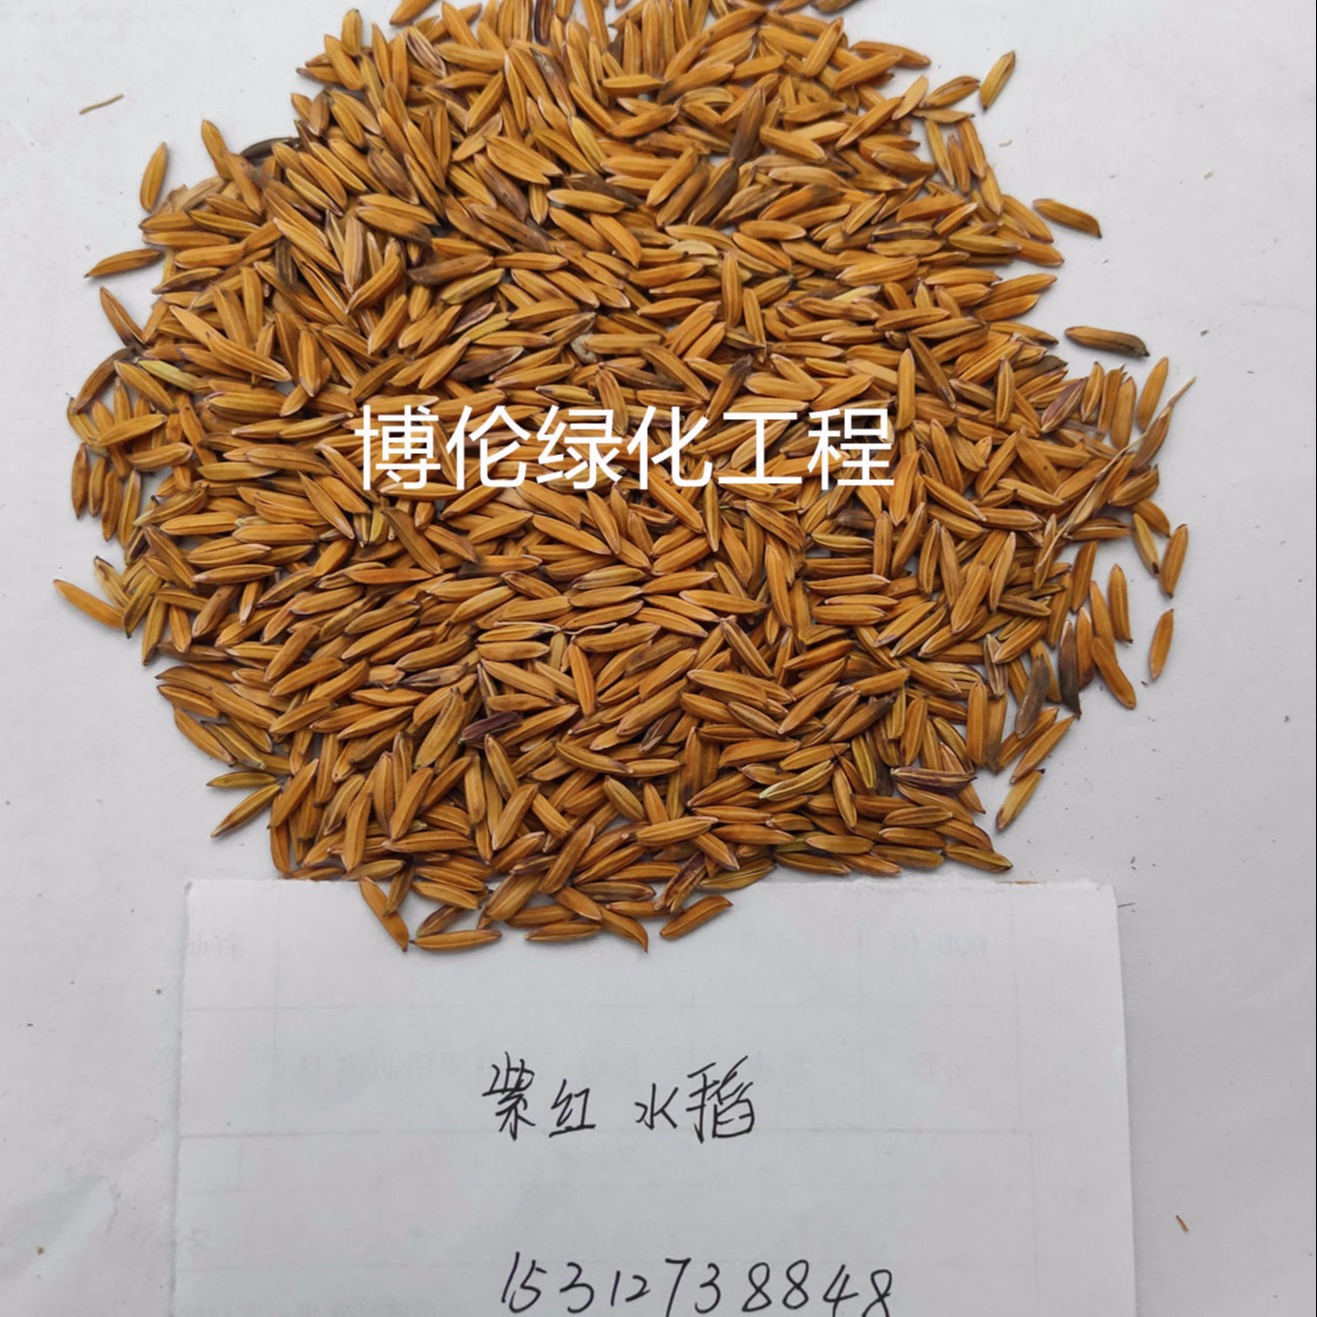 博伦紫红色水稻种子 白色水稻种子批发 黑色水稻种子价格 多彩水稻种子图片